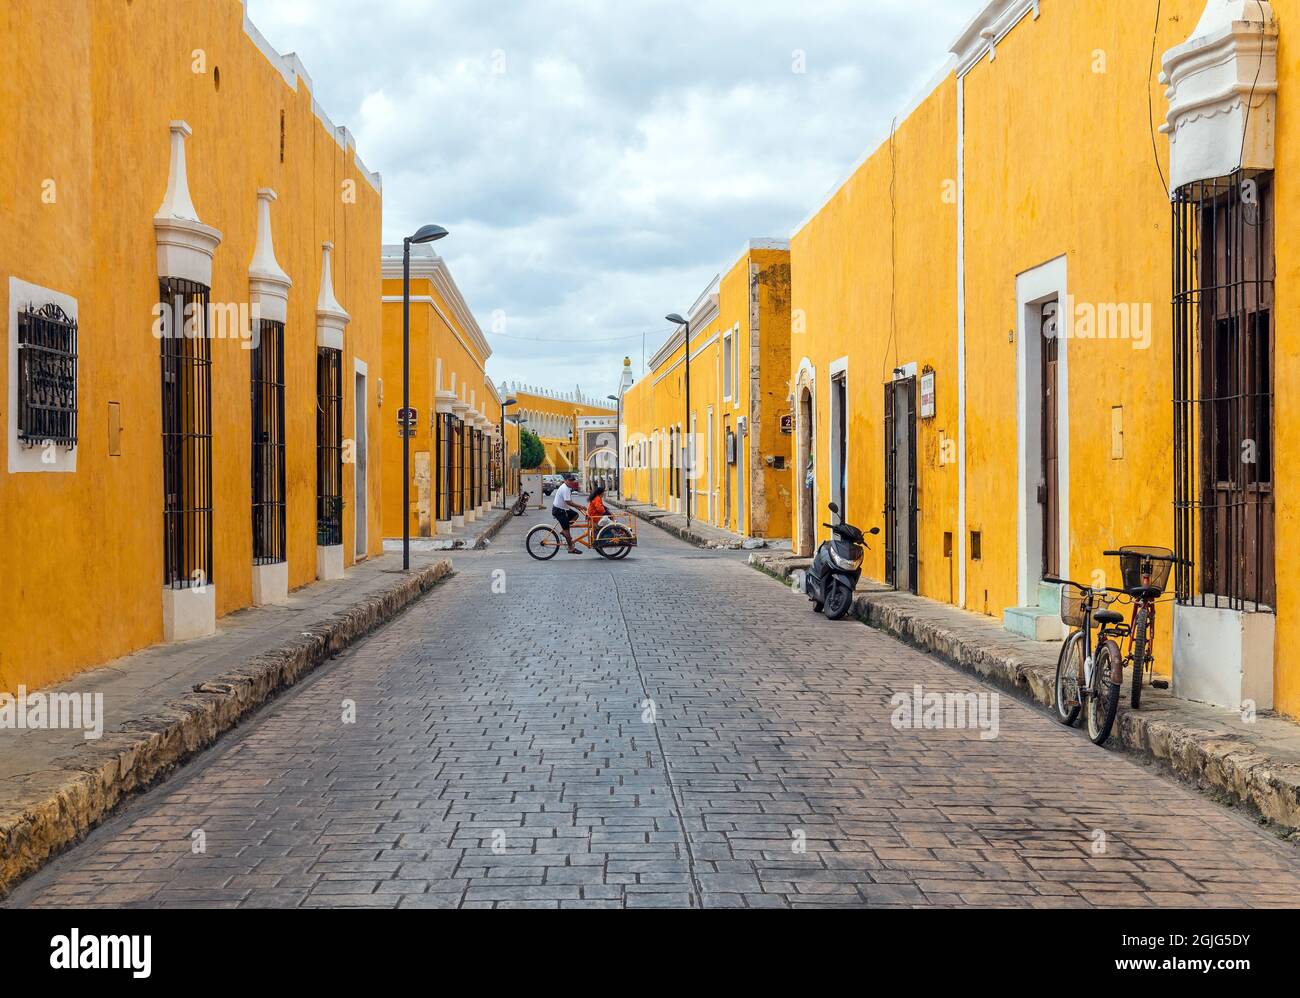 Mexikanischer Dreirad-Taxifahrer mit Beifahrer, der durch die Straßen der gelben Stadt Izamal im Kolonialstil fährt, Izamal, Mexiko. Stockfoto